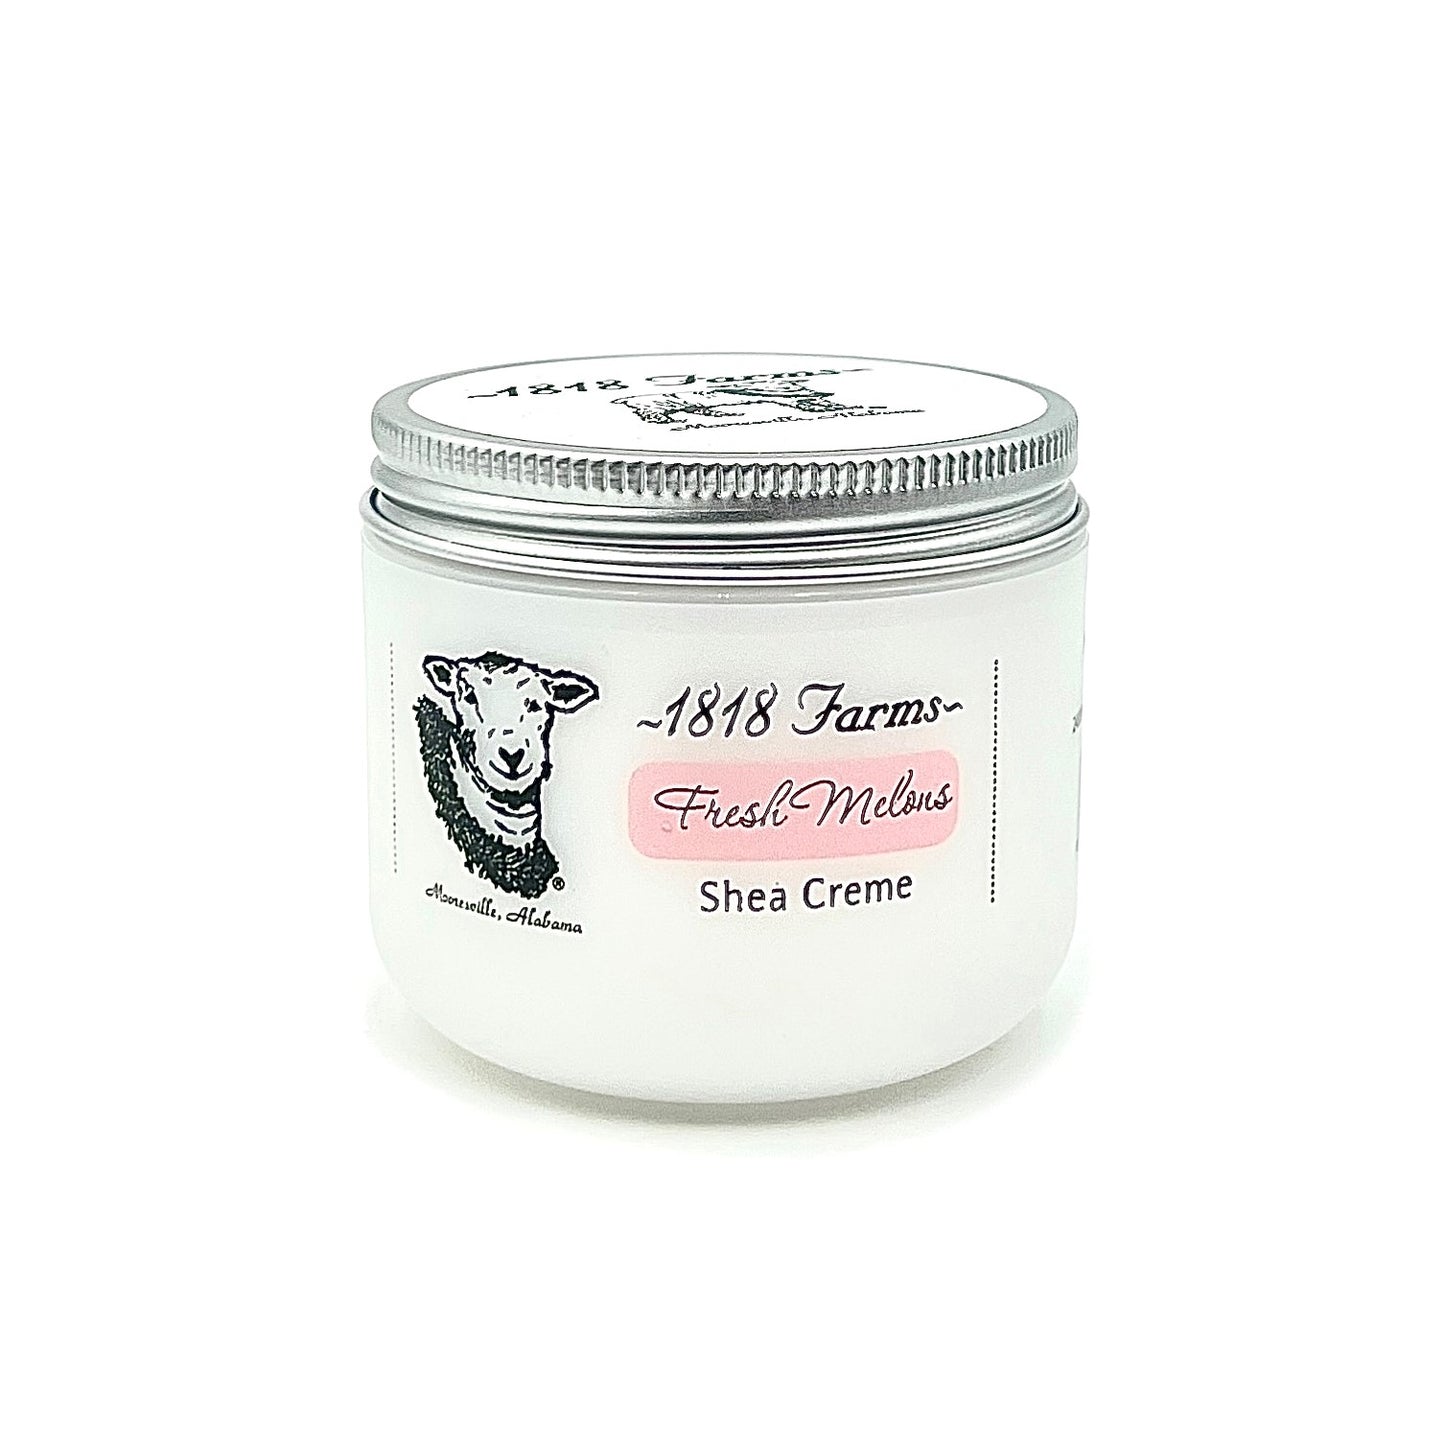 Shea Creme (4 fl oz) Shea Creme 1818 Farms   